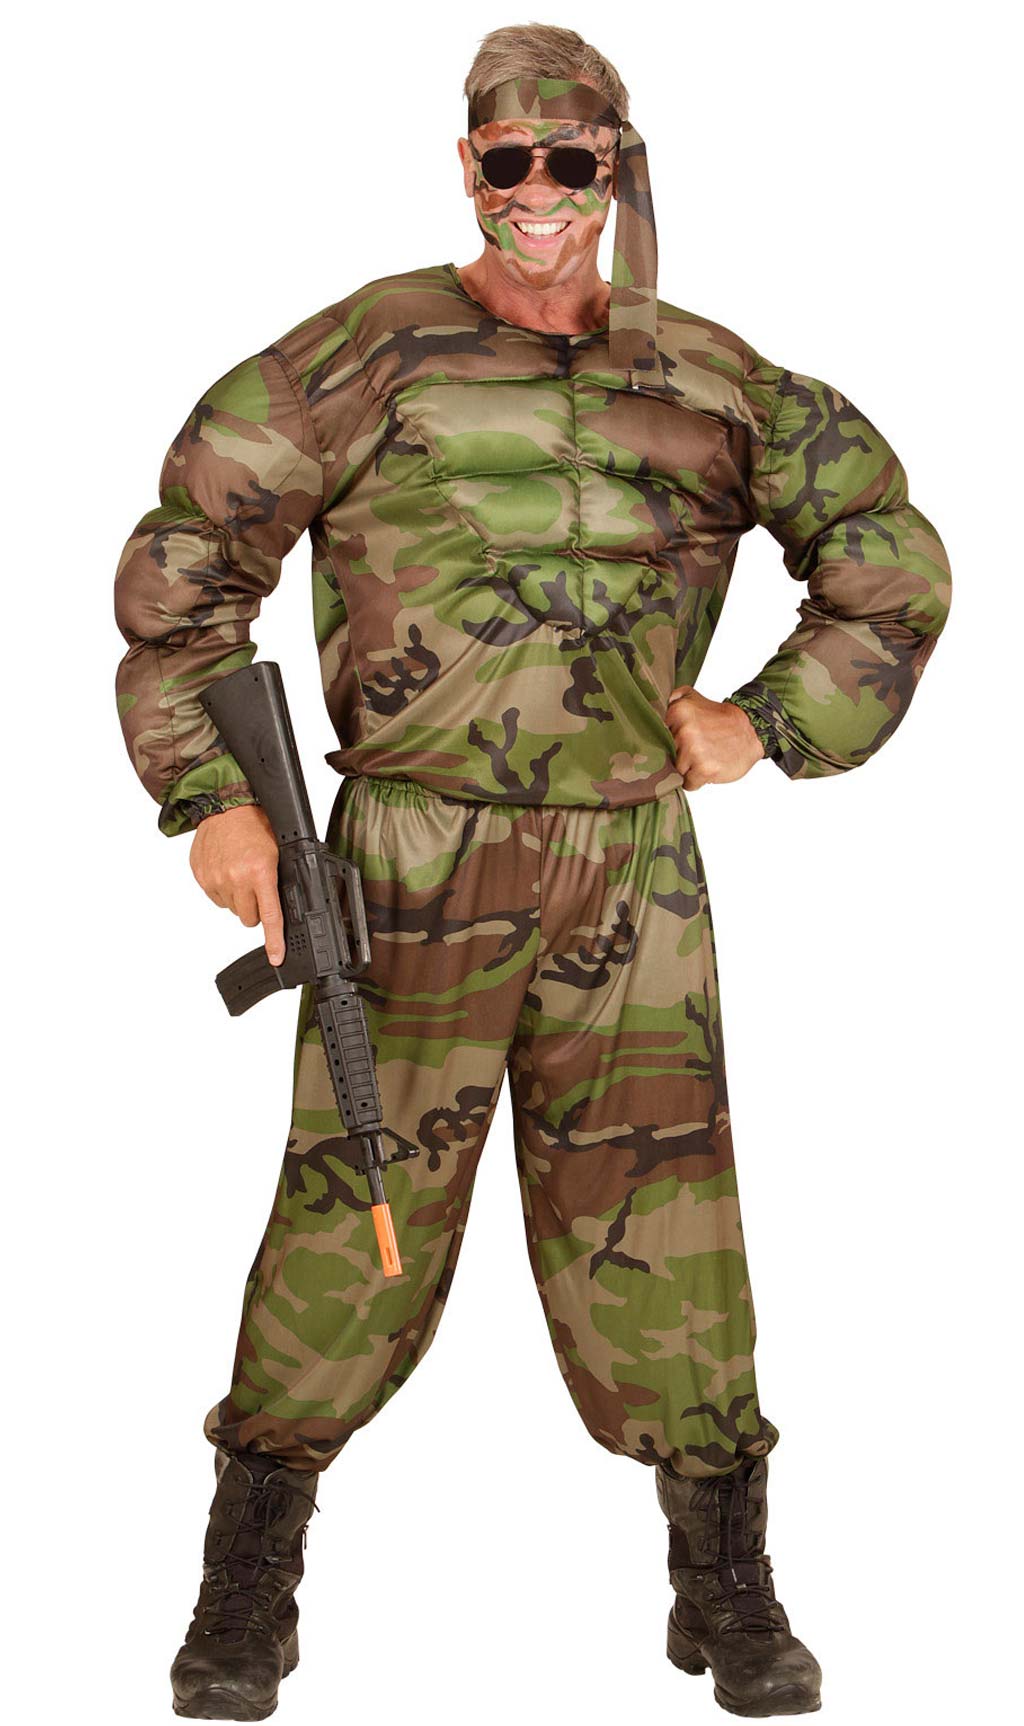 Las mejores ofertas en Disfraces para hombre uniforme militar